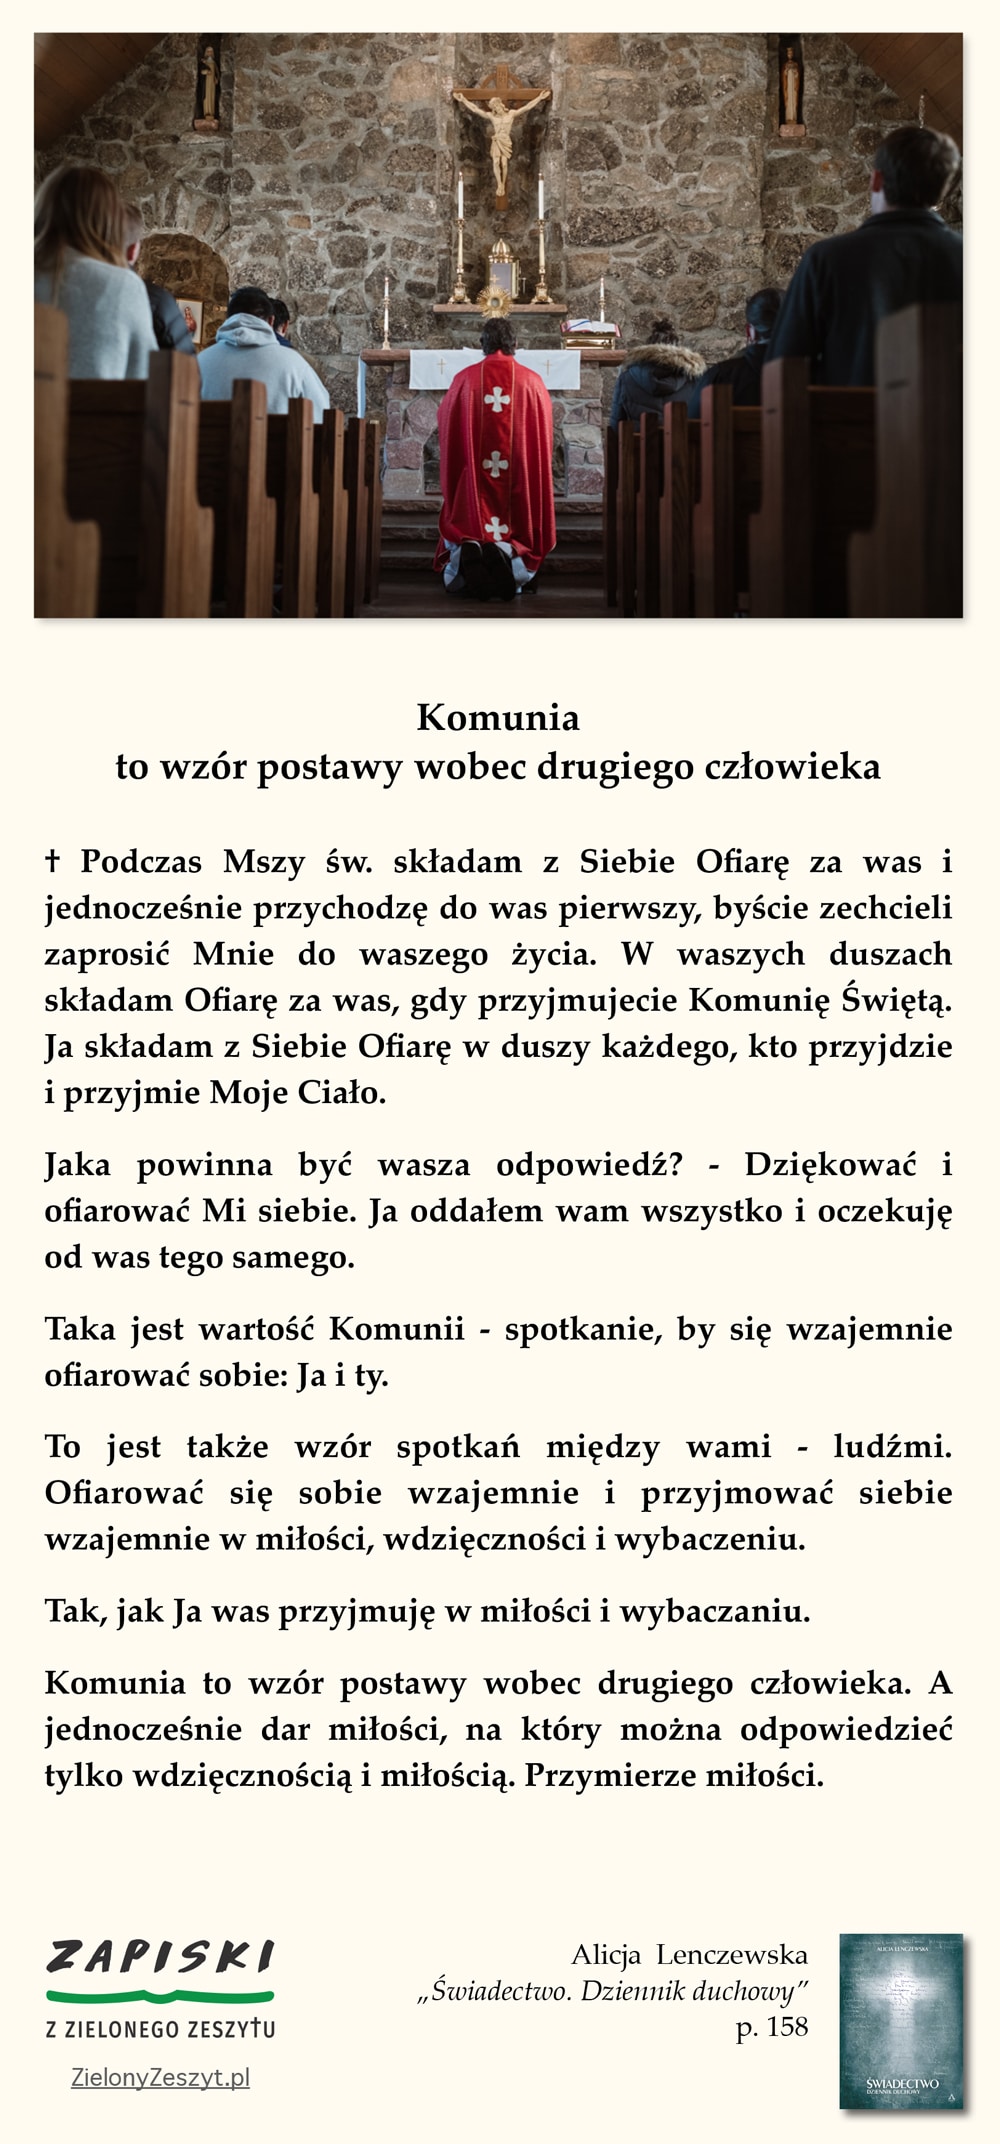 Alicja Lenczewska, "Świadectwo. Dziennik duchowy", p. 158 (Komunia to wzór postawy wobec drugiego człowieka)